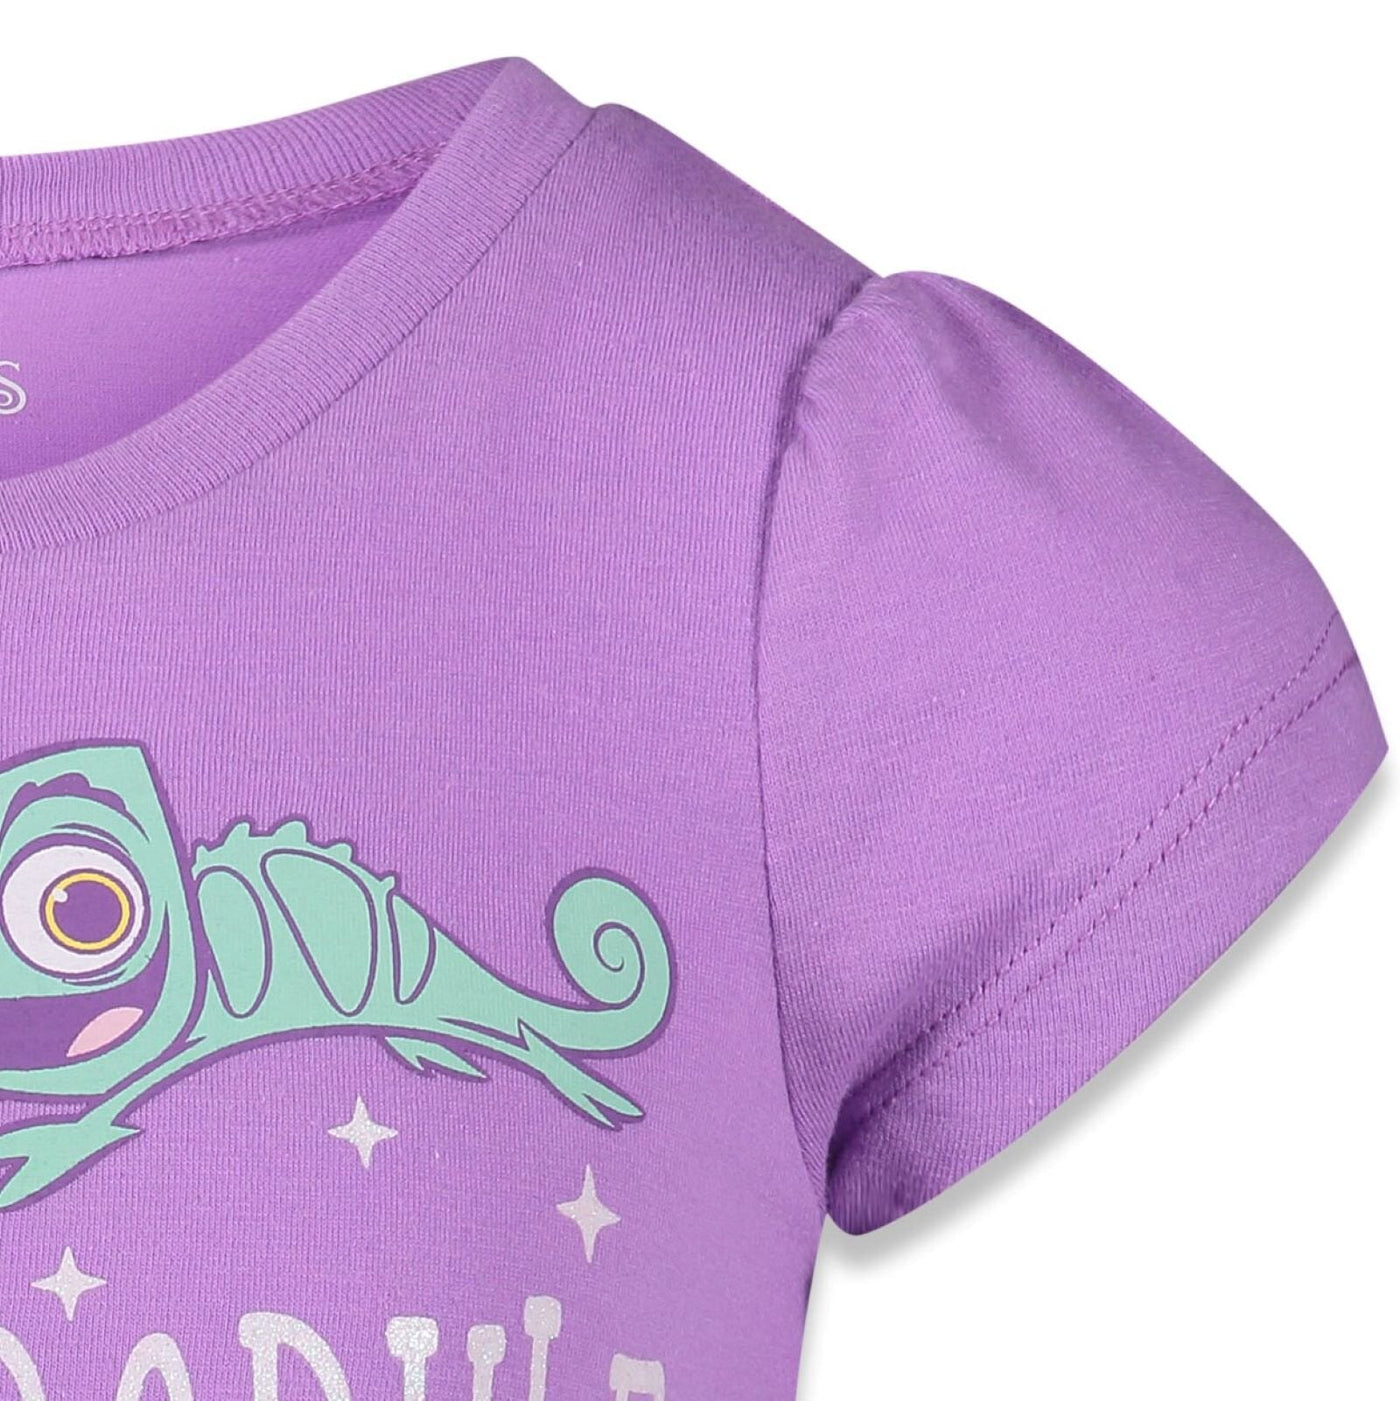 Disney Princess Belle Ariel Cinderella 4 Pack T-Shirts Infant to Big Kid - imagikids